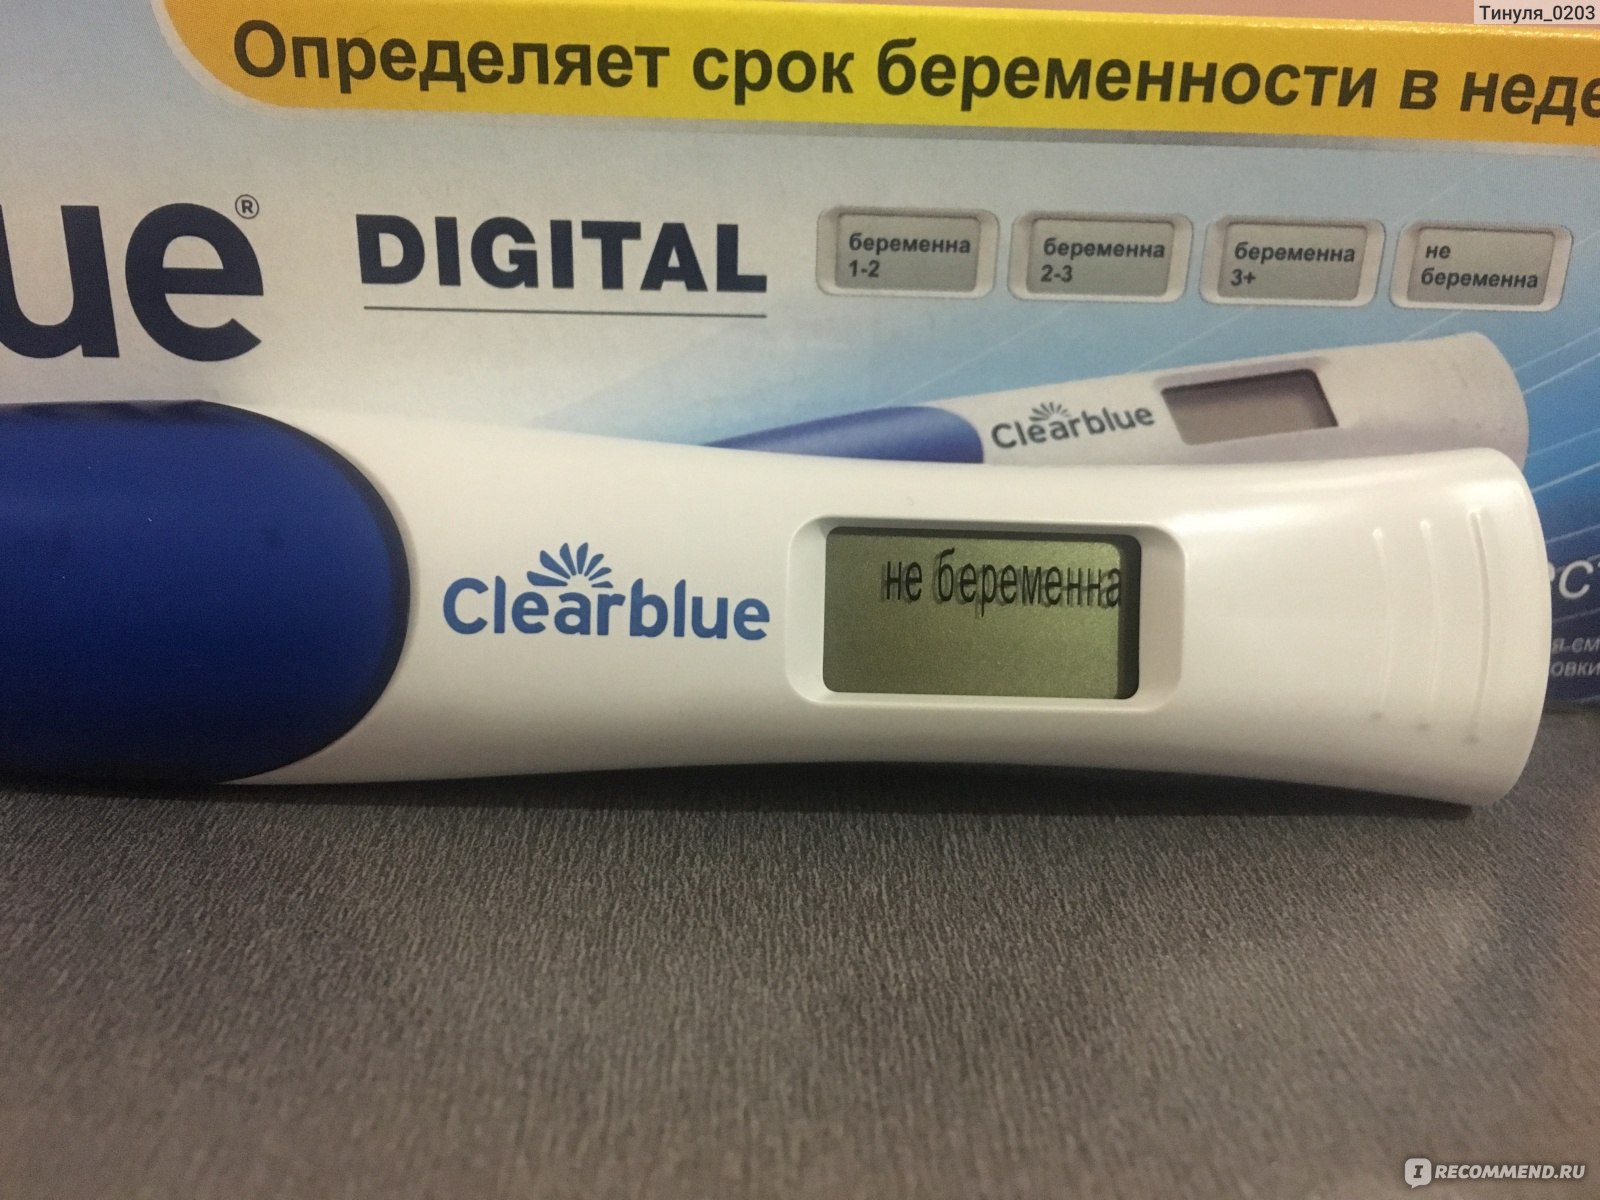 Тест на беременность Clearblue цифровой с индикатором срока